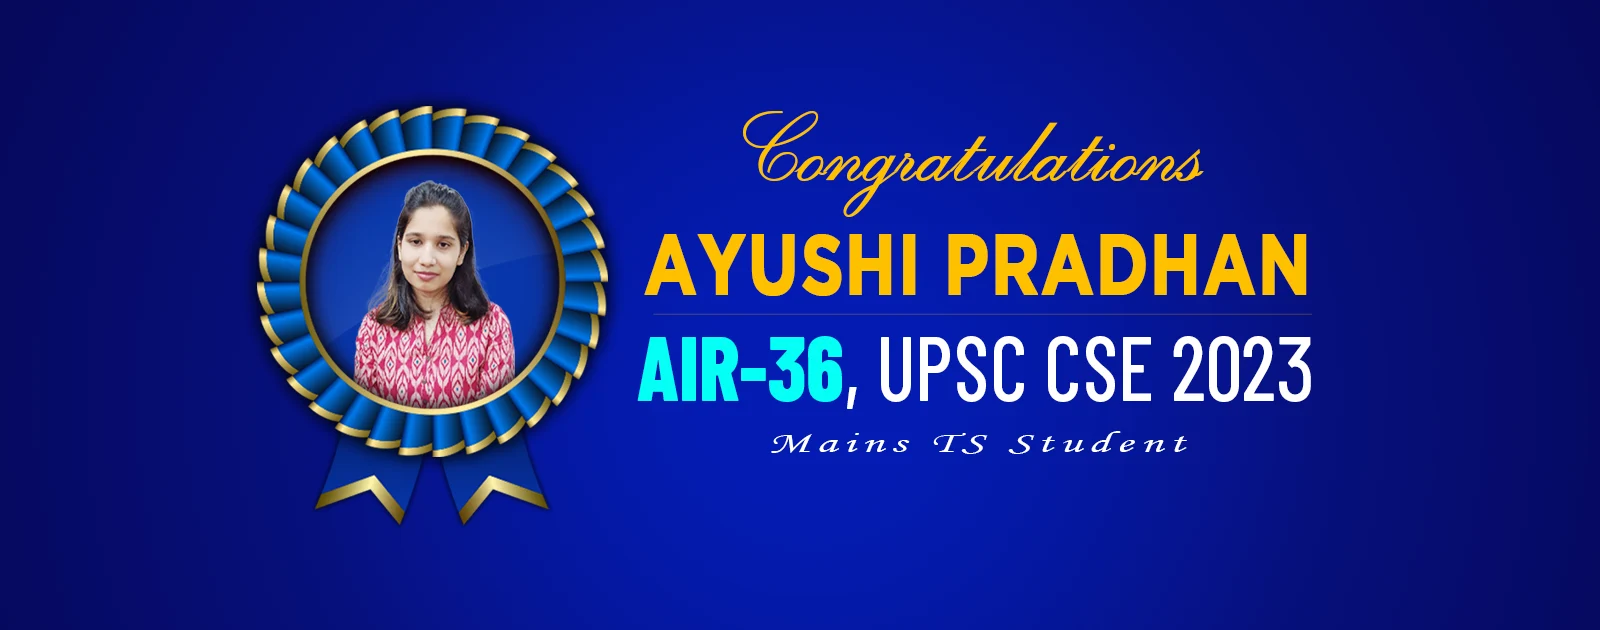 Ayushi Pradhan